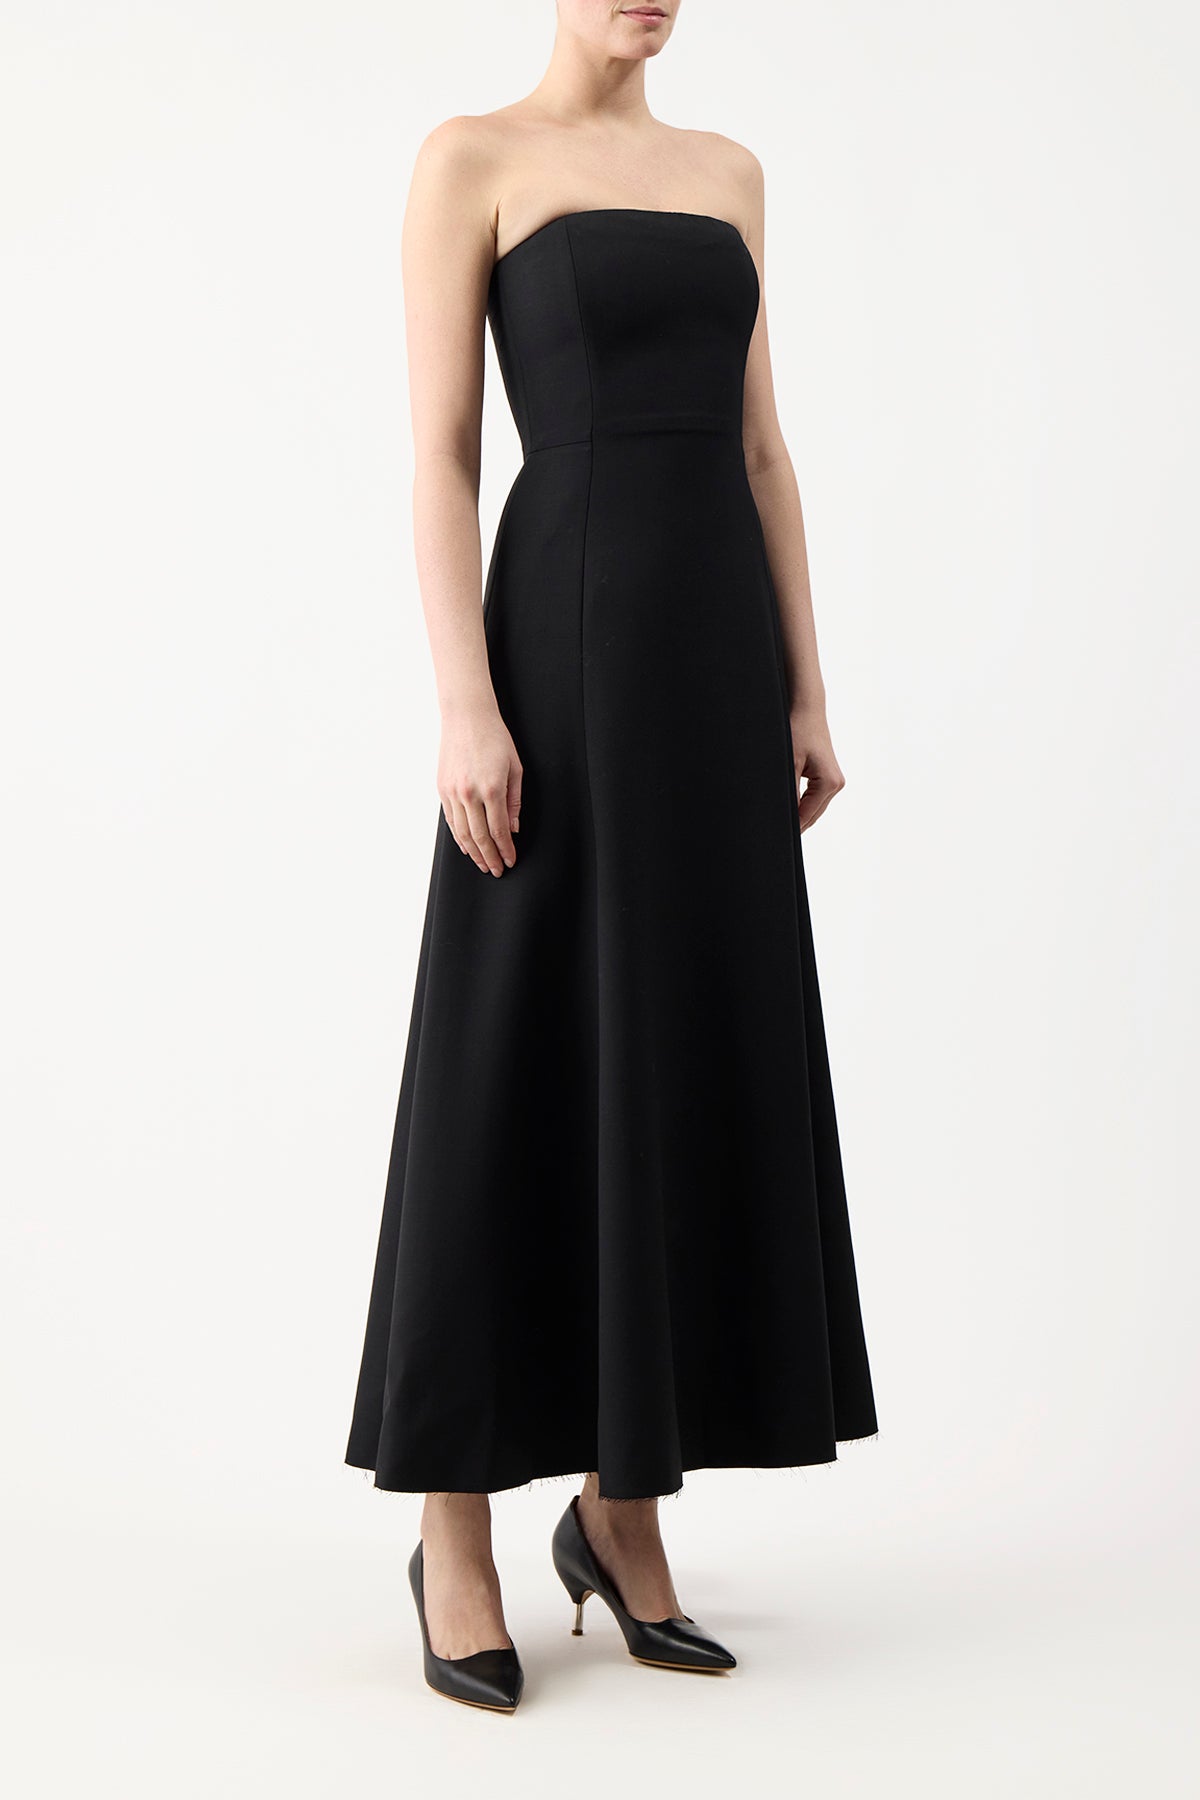 Arion Dress in Black Sportswear Wool